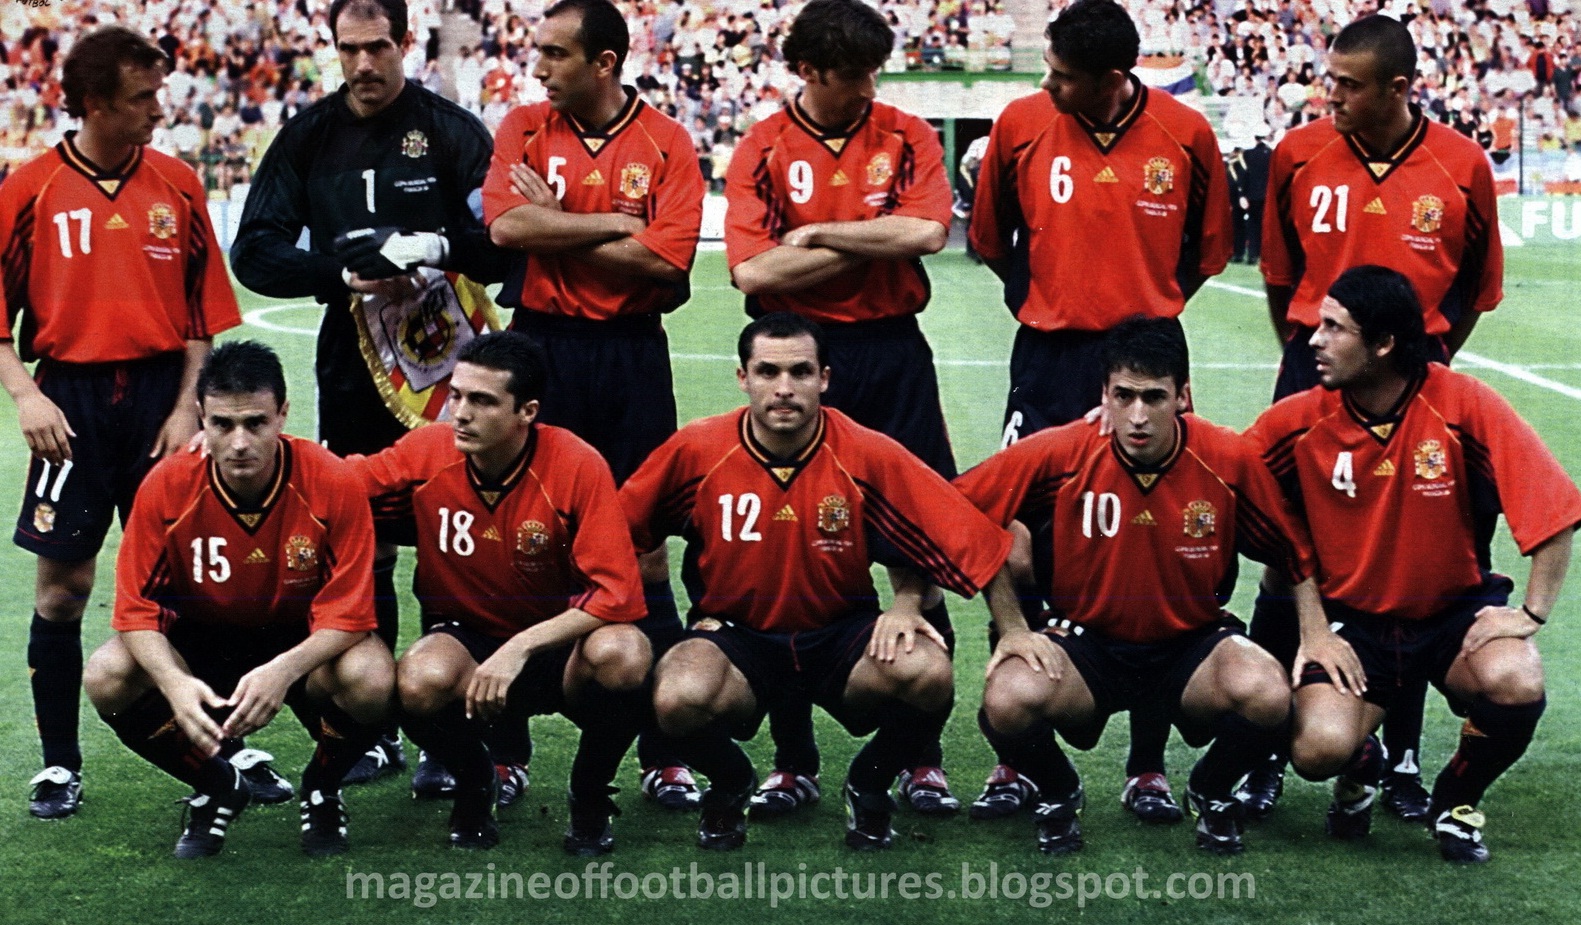 Selección 1998 en la actualidad (FOTOS) - Forocoches